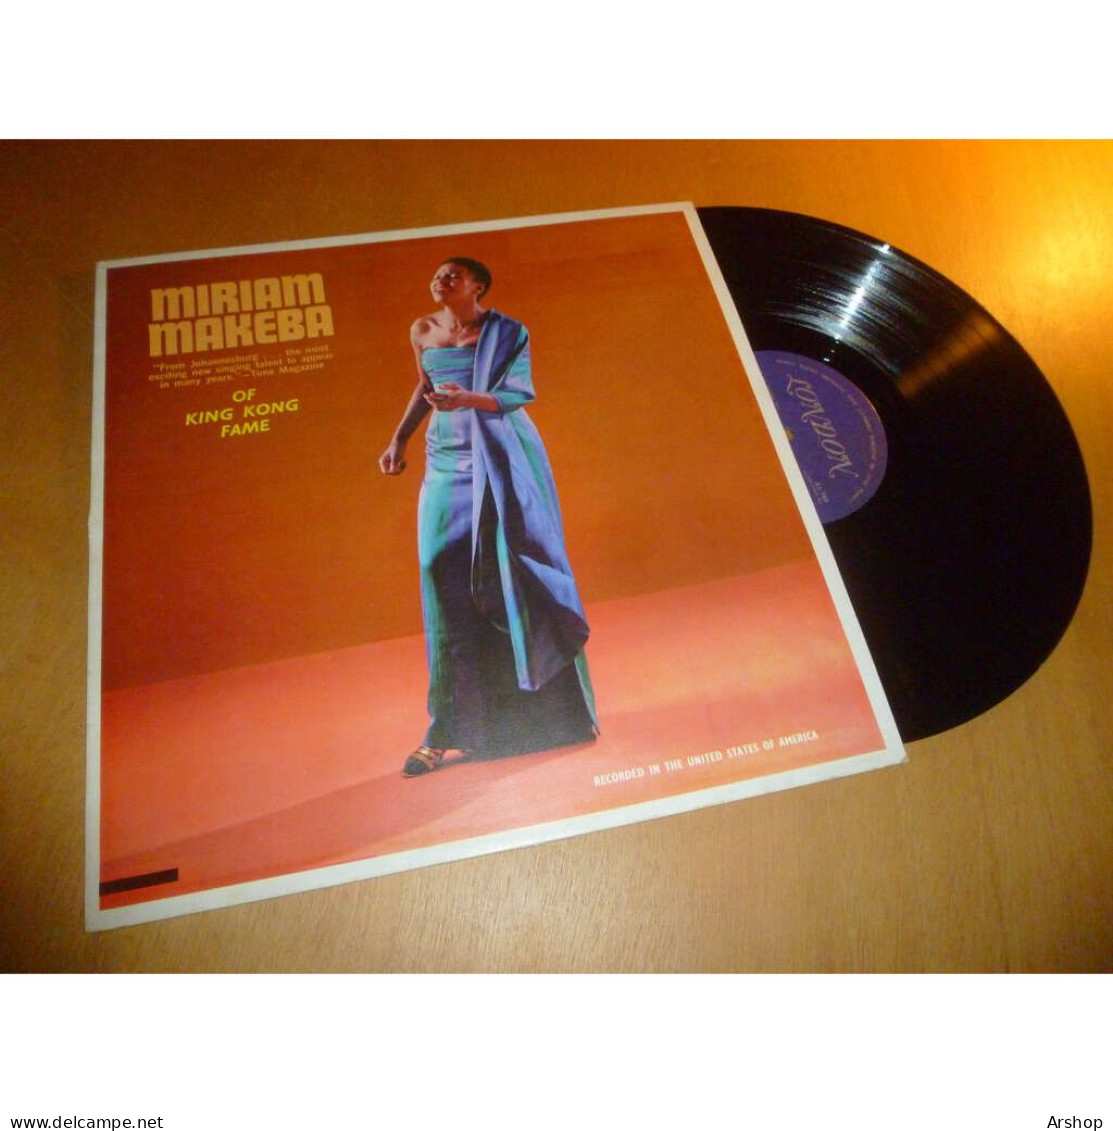 MIRIAM MAKEBA Of King Kong Fame LONDON Records KL 789 Lp 1977 - World Music